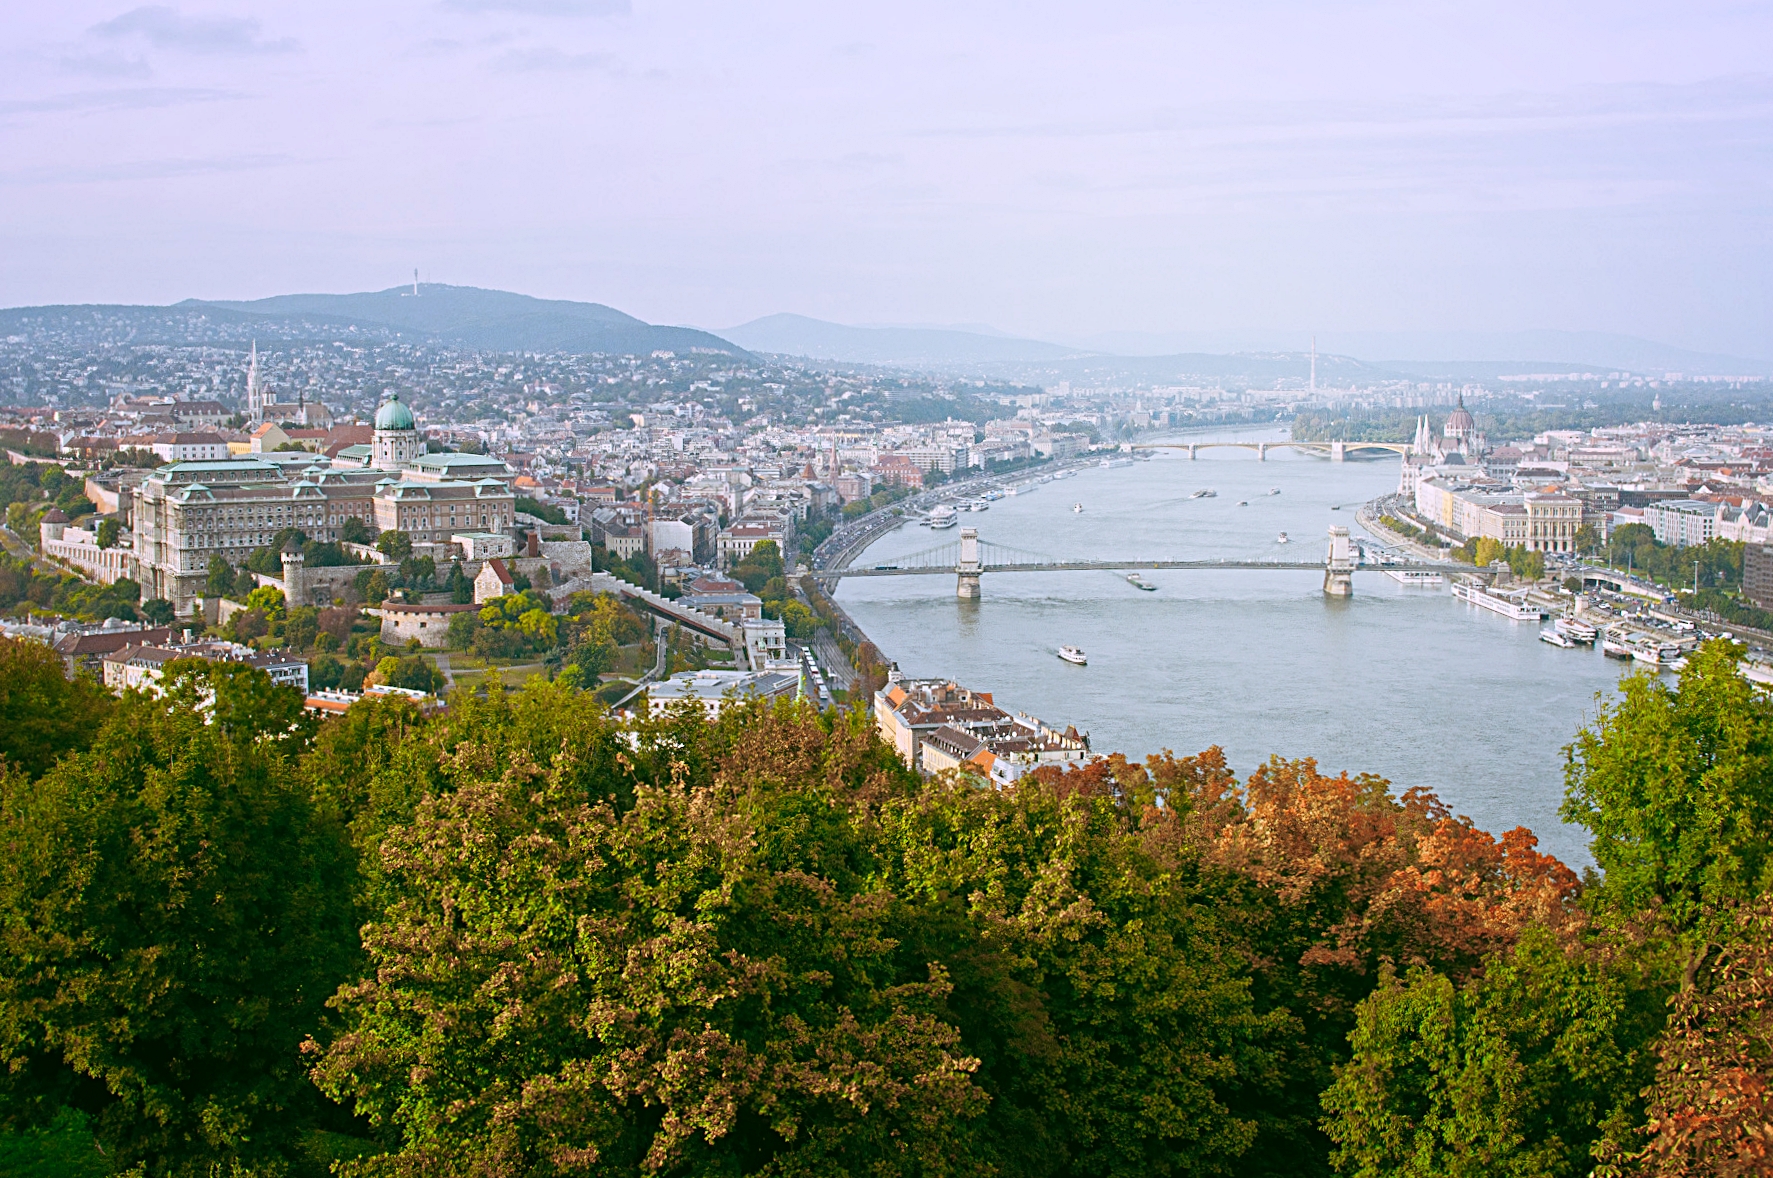   Budapest    Tradición y vanguardia en la Perla del Danubio  